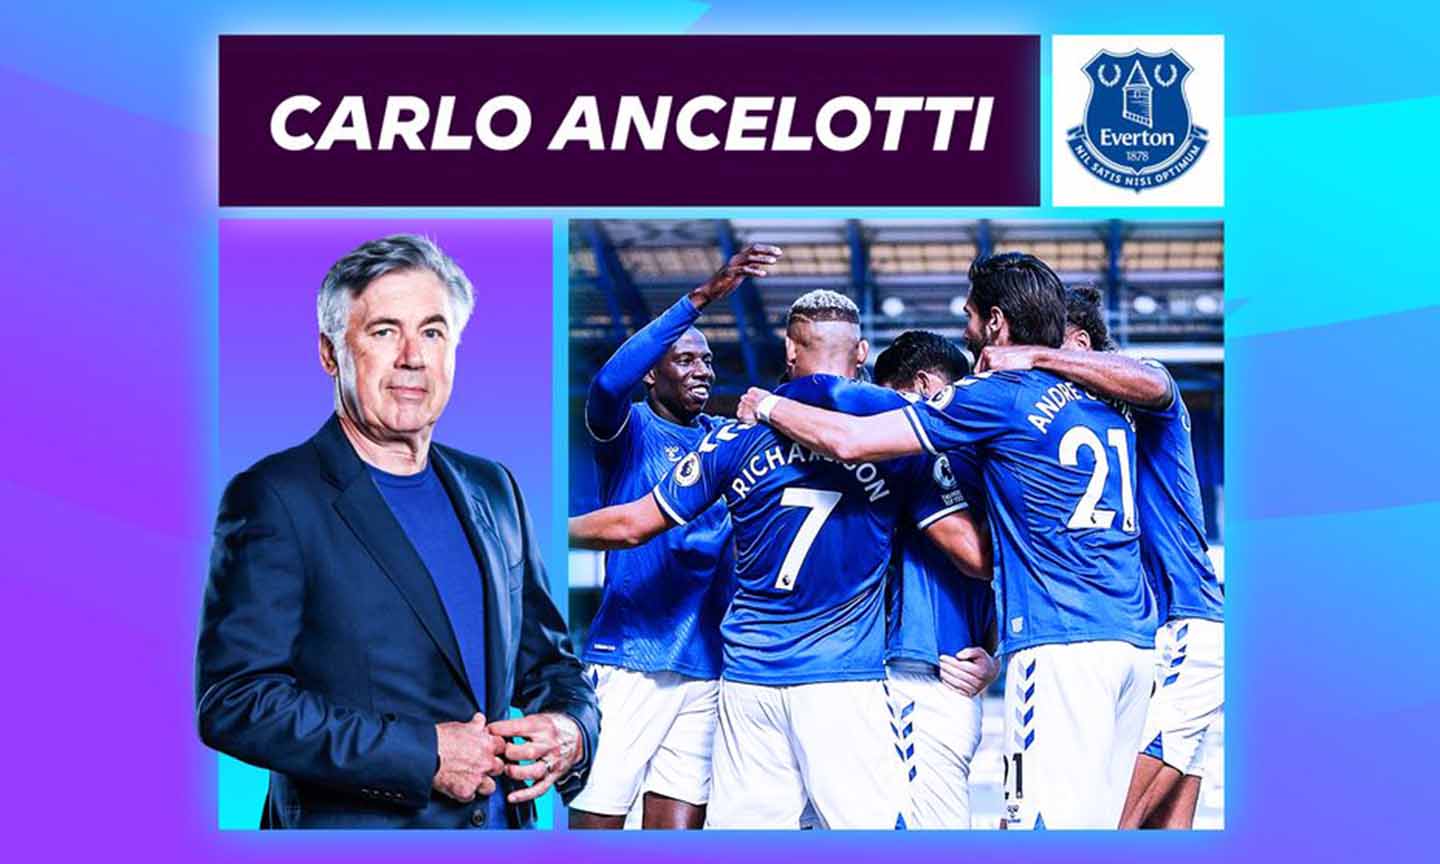 Acelotti với kinh nghiệm của mình đang cùng Everton thể hiện phong độ cao tại Ngoại hạng Anh.